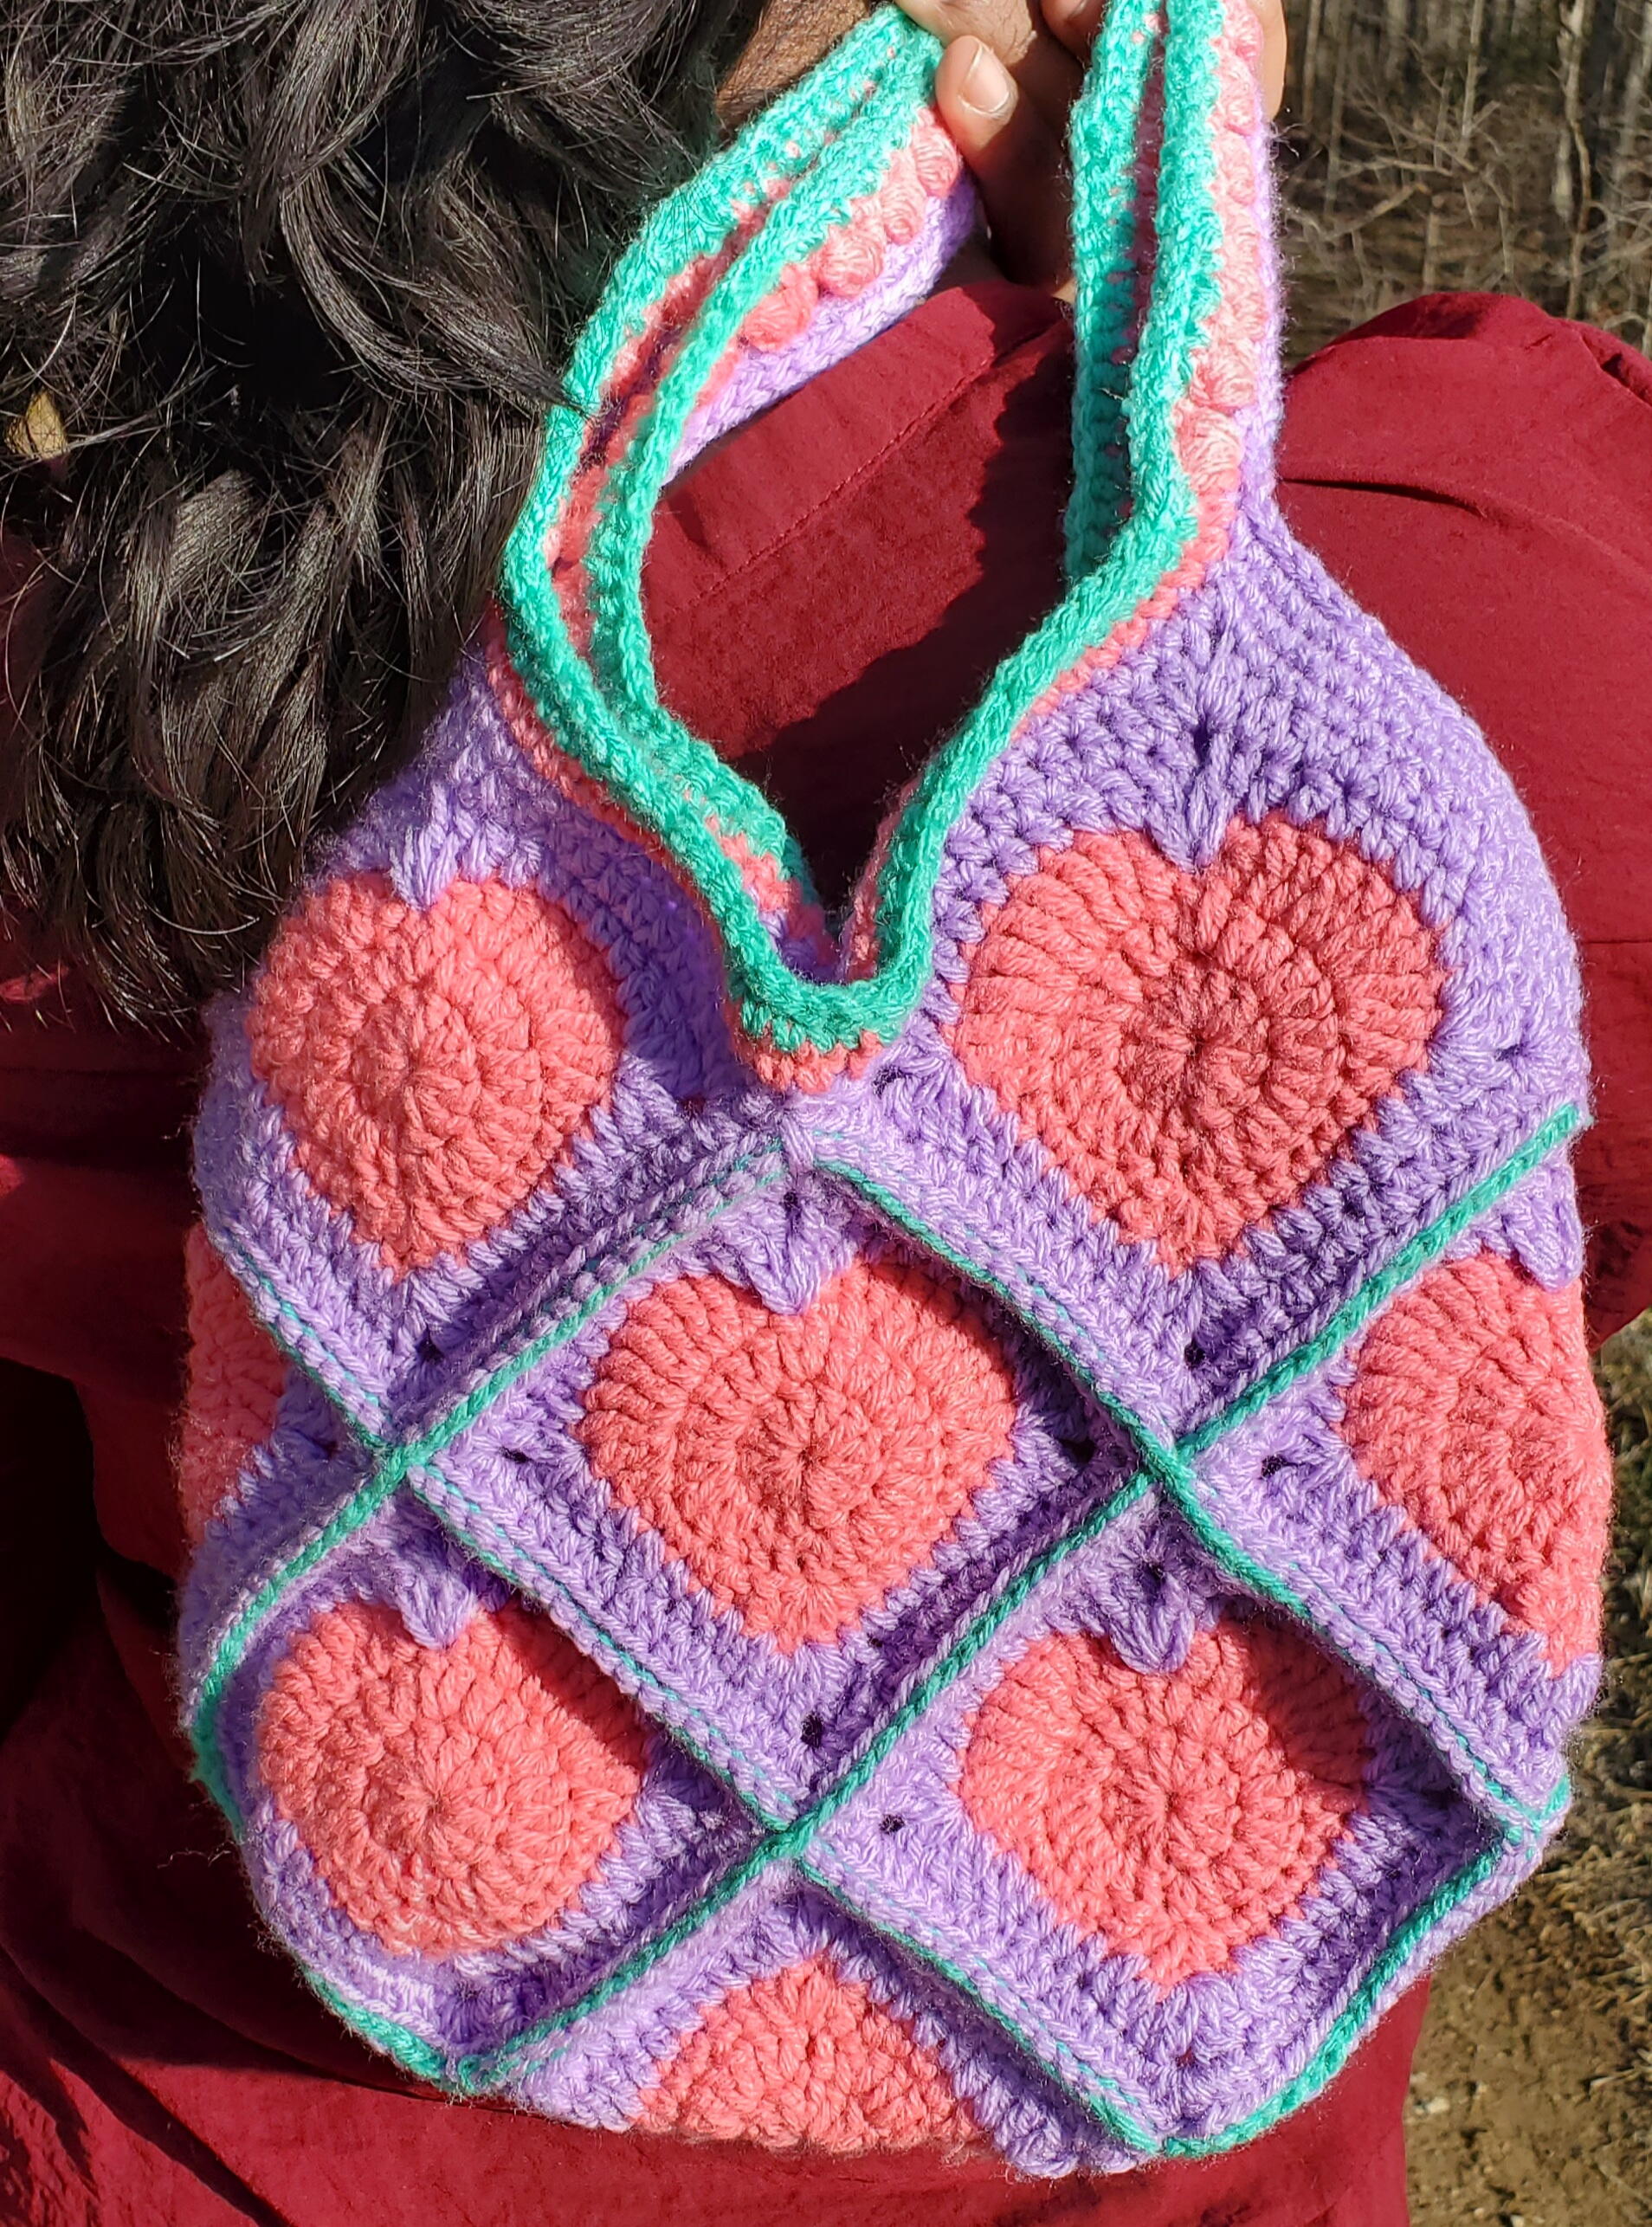 Crochet Heart Tote 